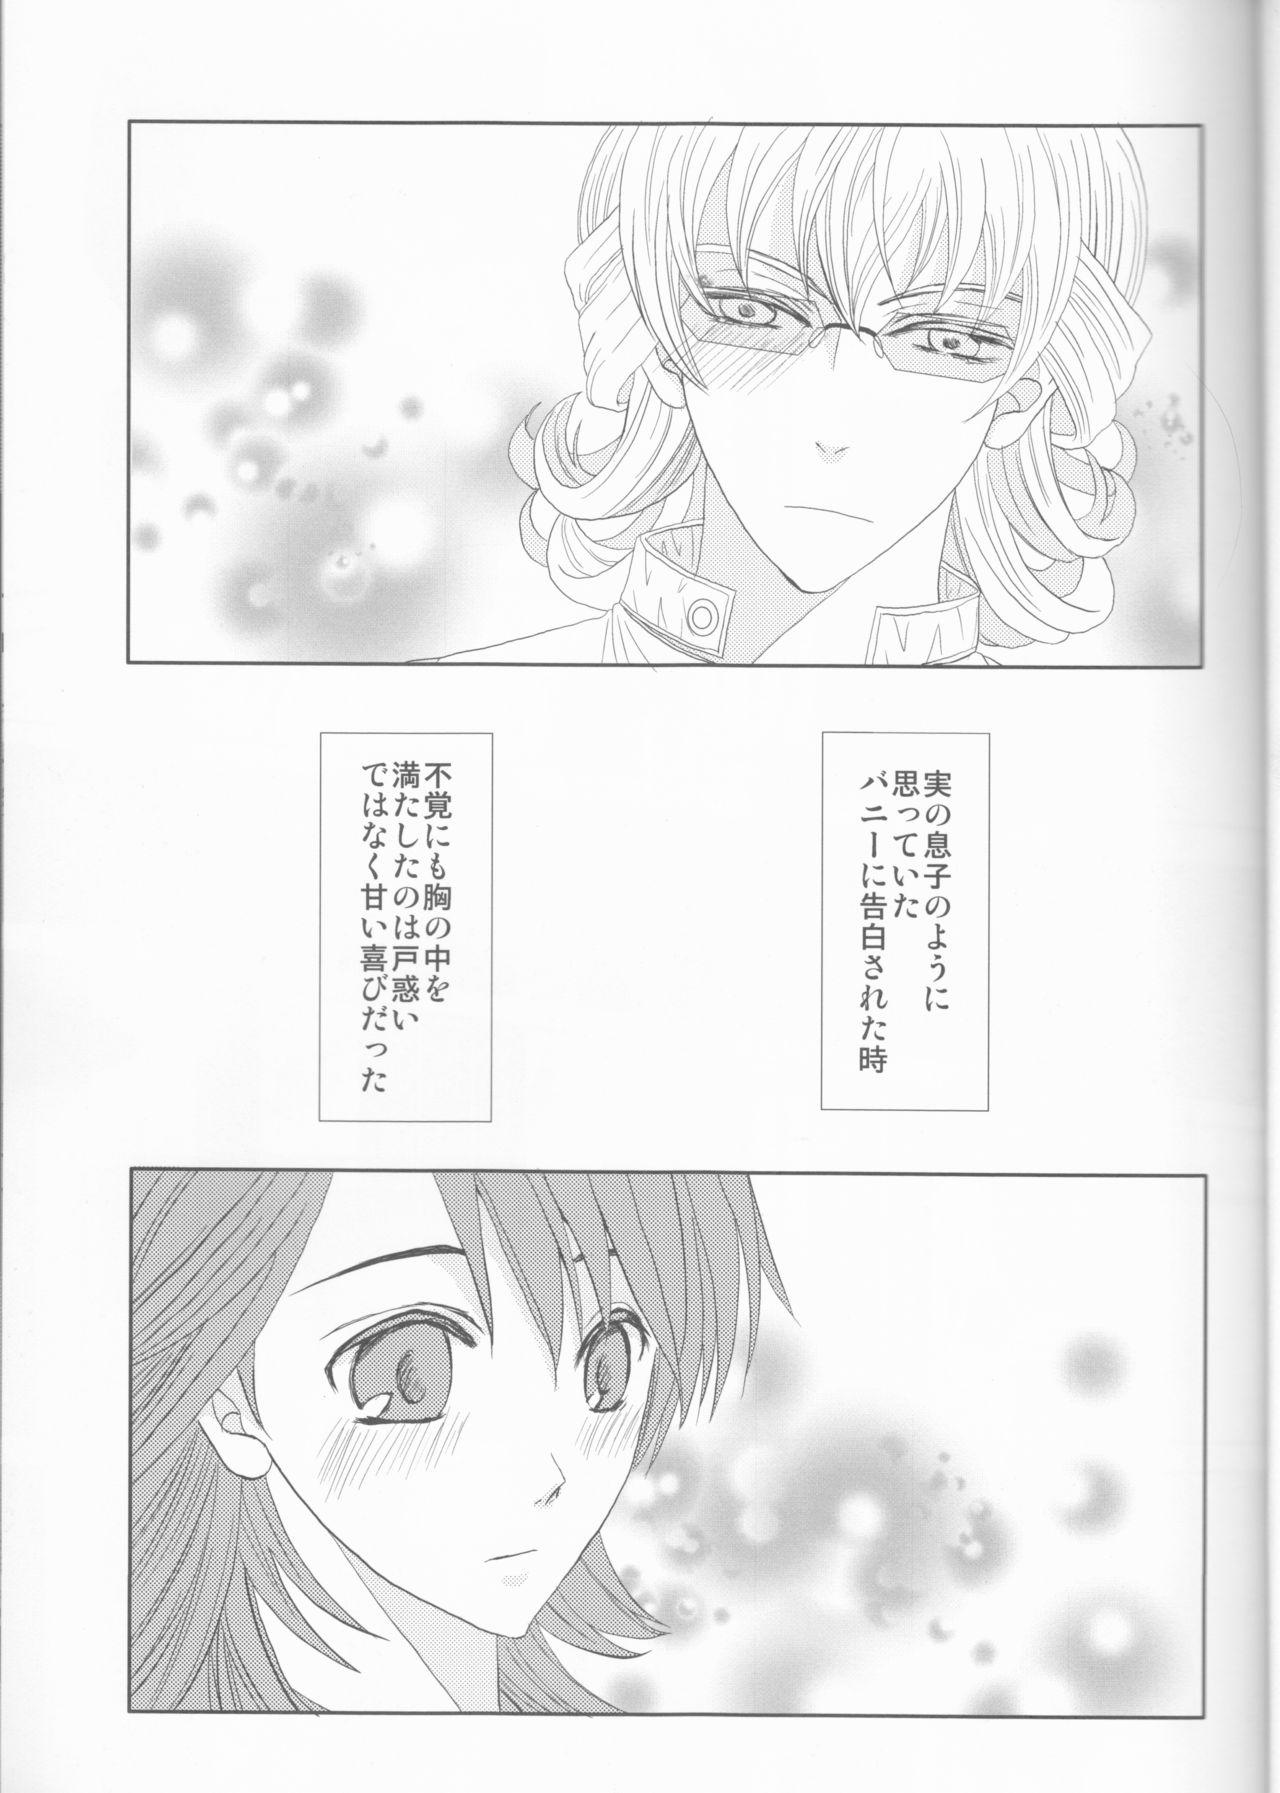 English Itsuka wa inaku naru kimi e - Tiger and bunny Short Hair - Page 4